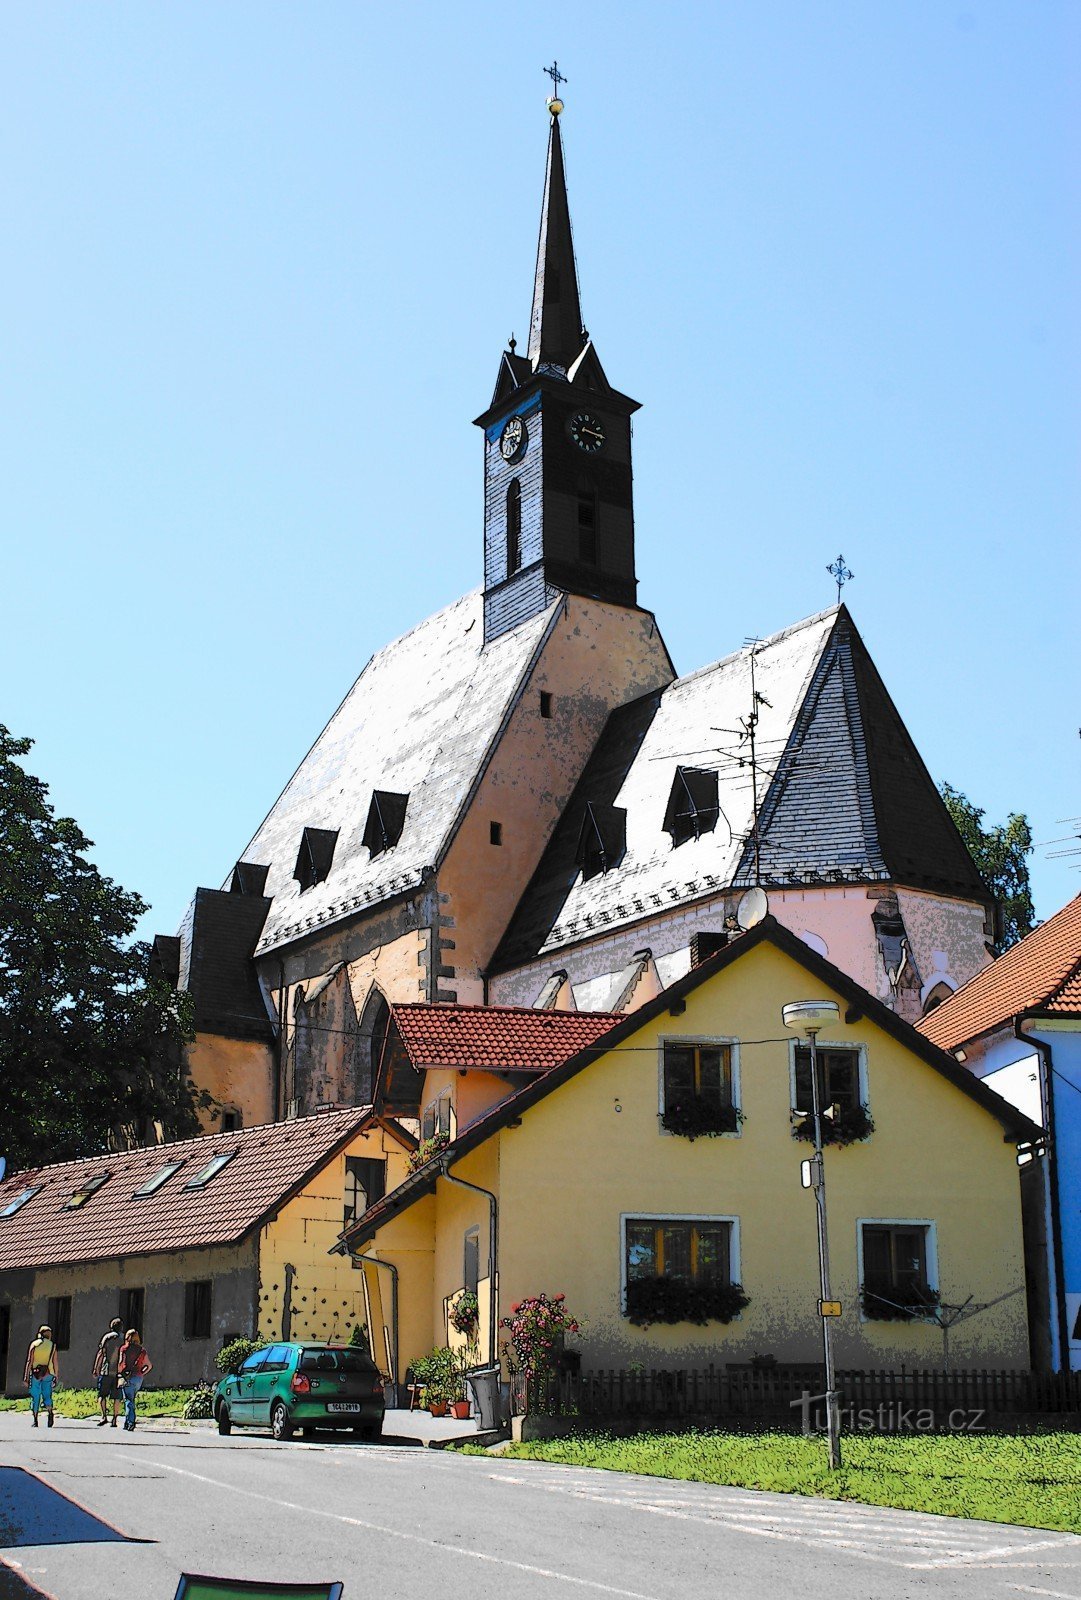 Dolní Dvořiště – Kirche St. Lilie